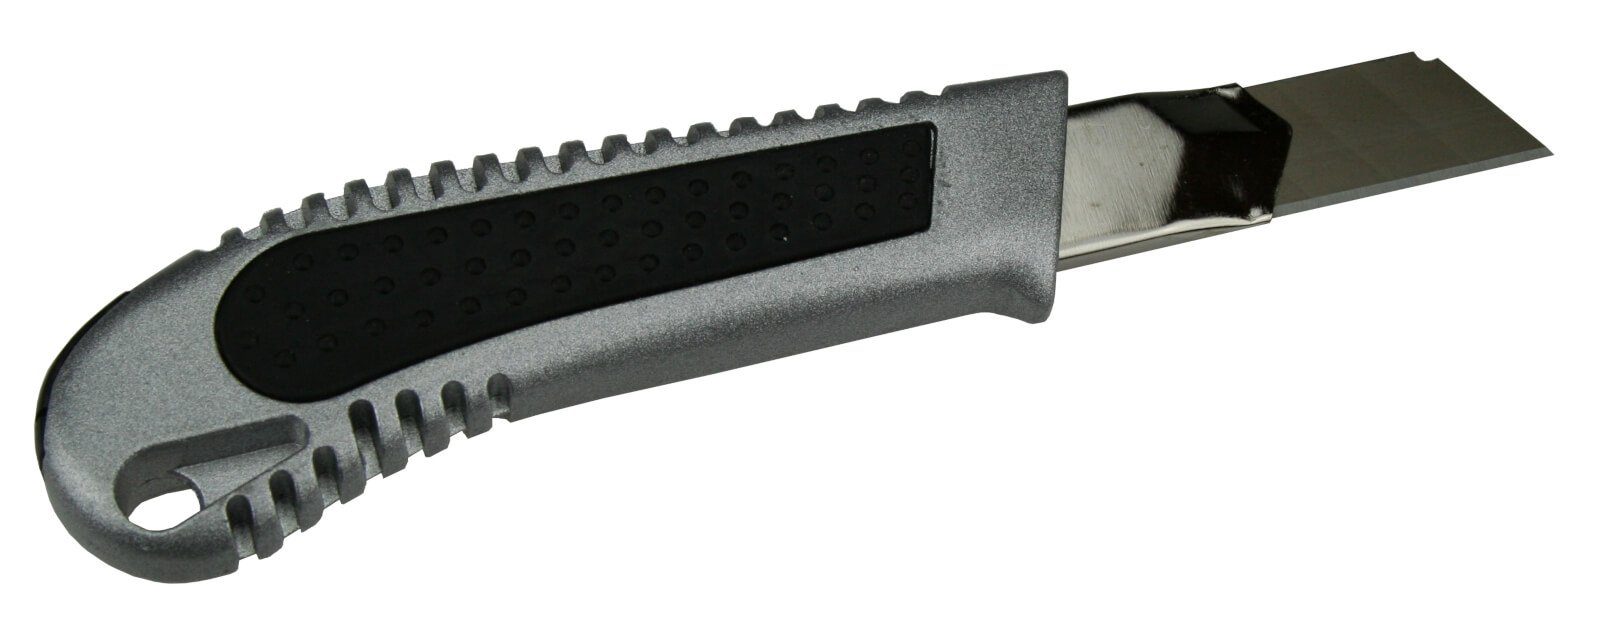 18mm peveha24 (10 Köcher Alu + Stück) Cuttermesser im 10 Abbrechklingen Cuttermesser